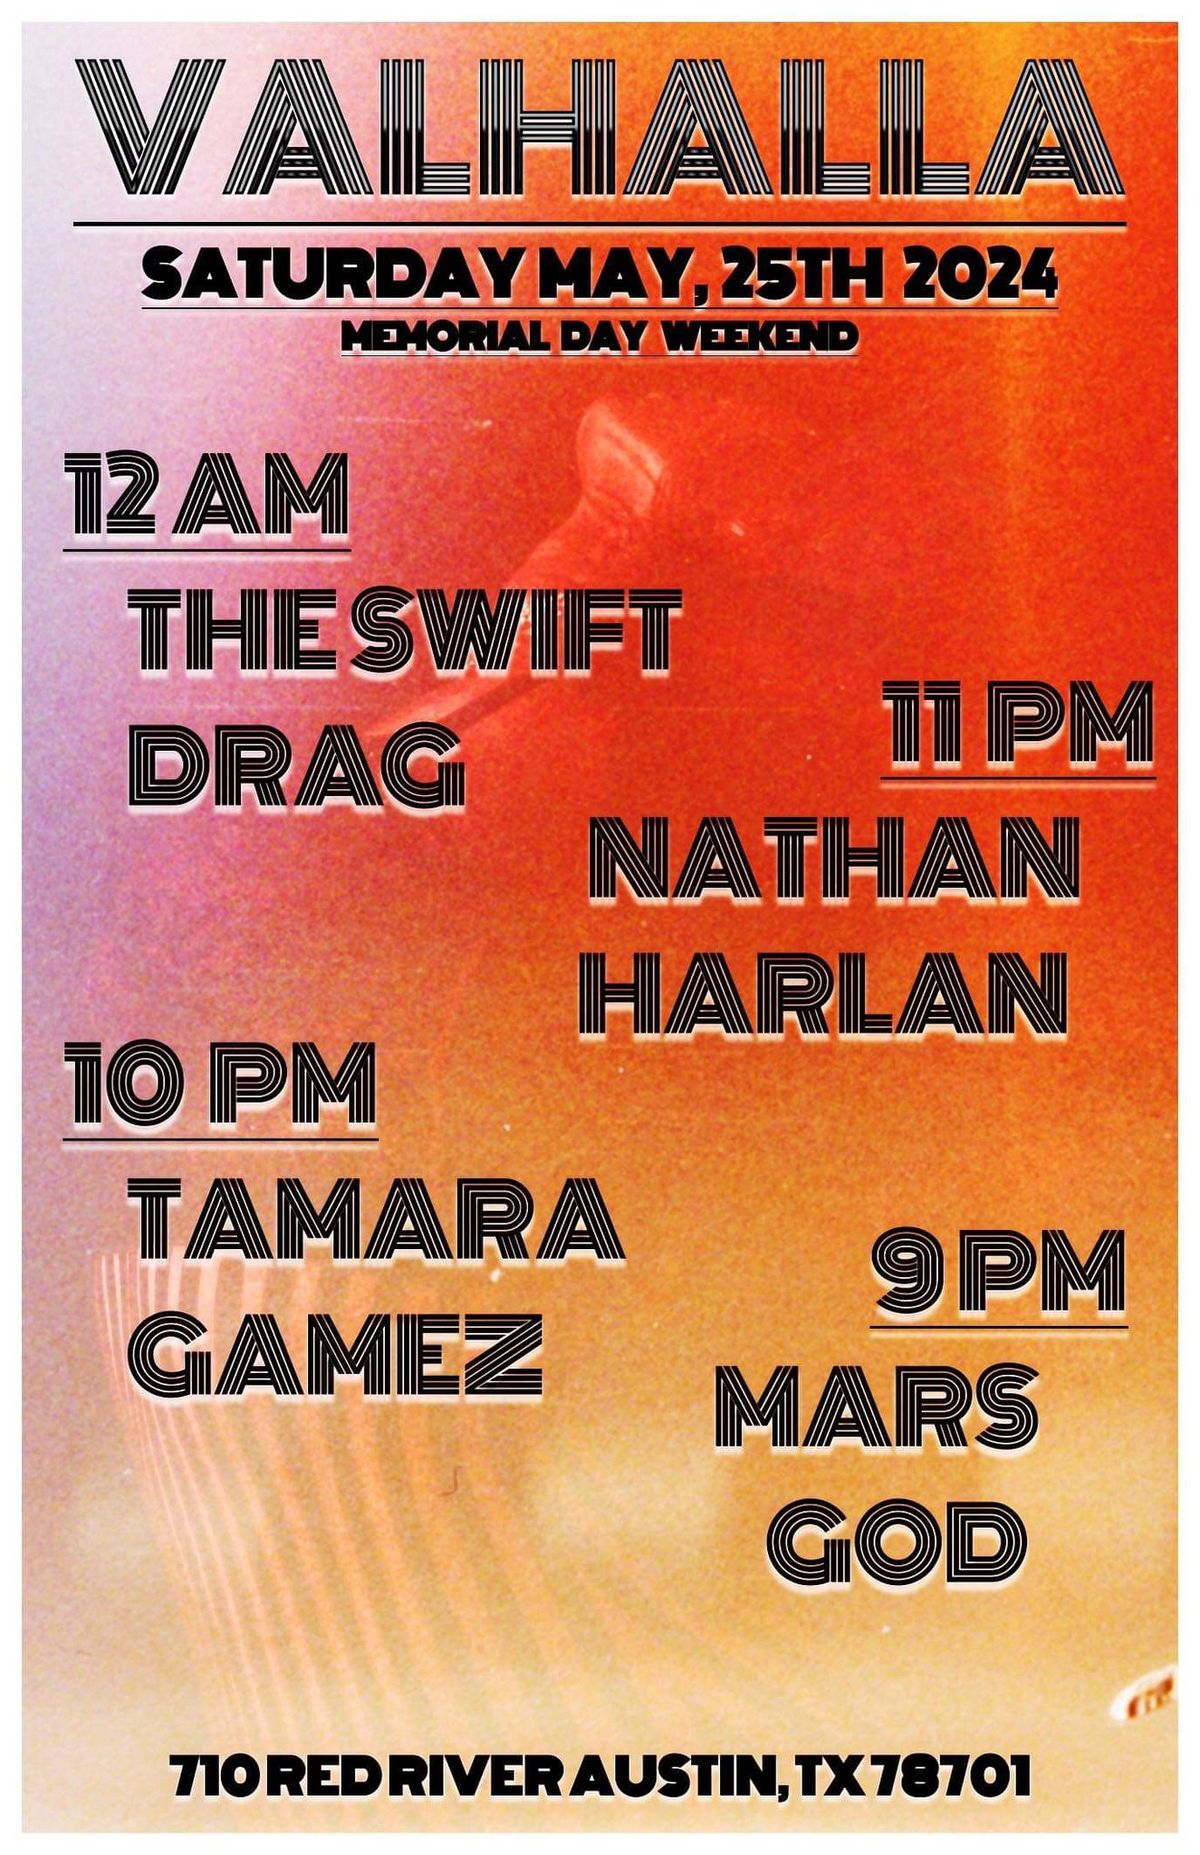 Saturday May 25 The Swift Drag, Nathan Harlan, Tamara Gamez, Mars God